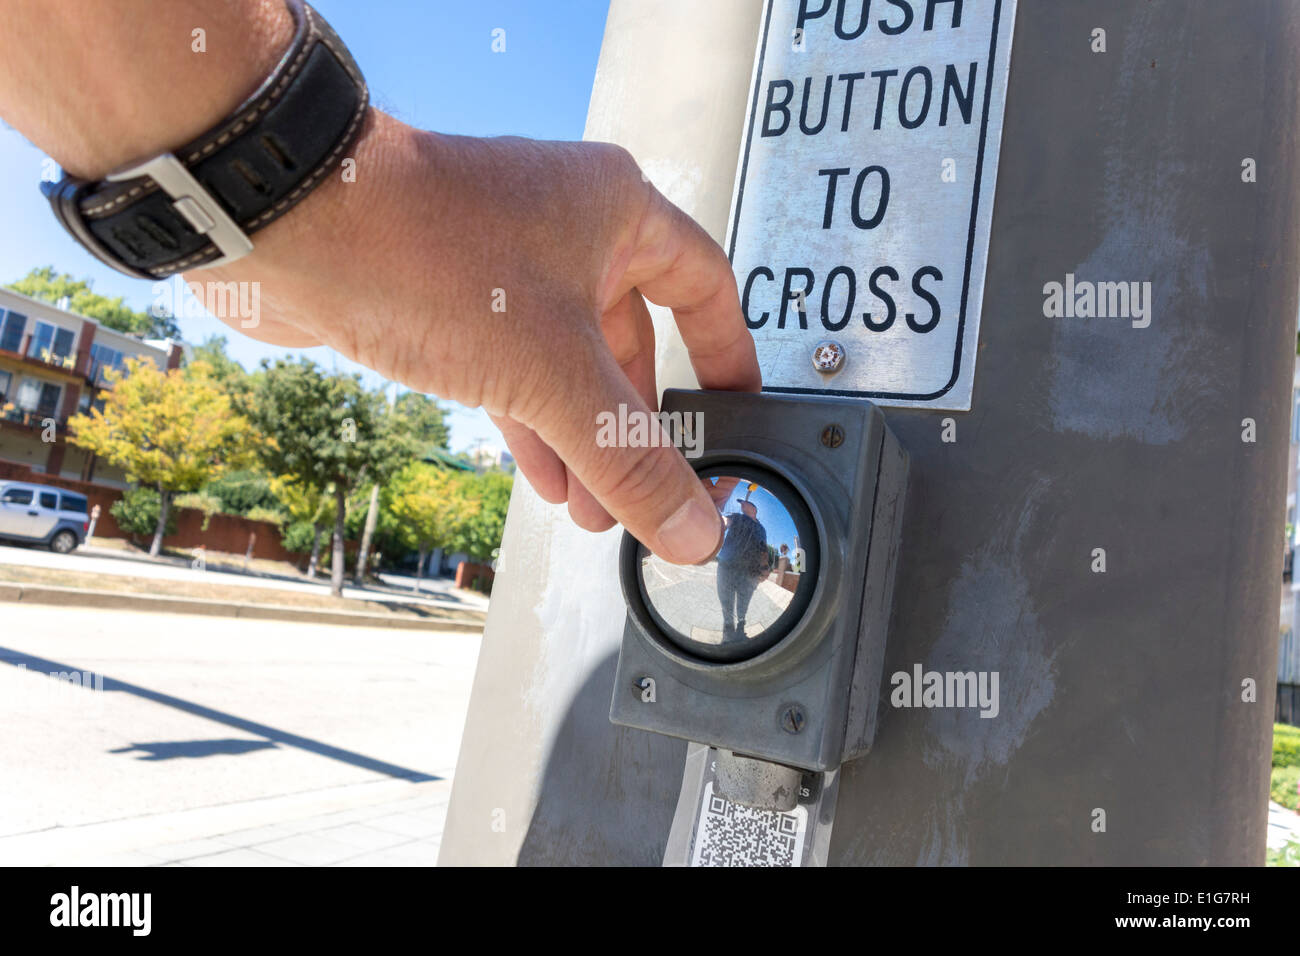 Botón pulsador para cruzar con signo, la mano. Paso de peatones cruce peatonal. Hombre presionando un botón para detener el tráfico de automóviles en la intersección. Foto de stock